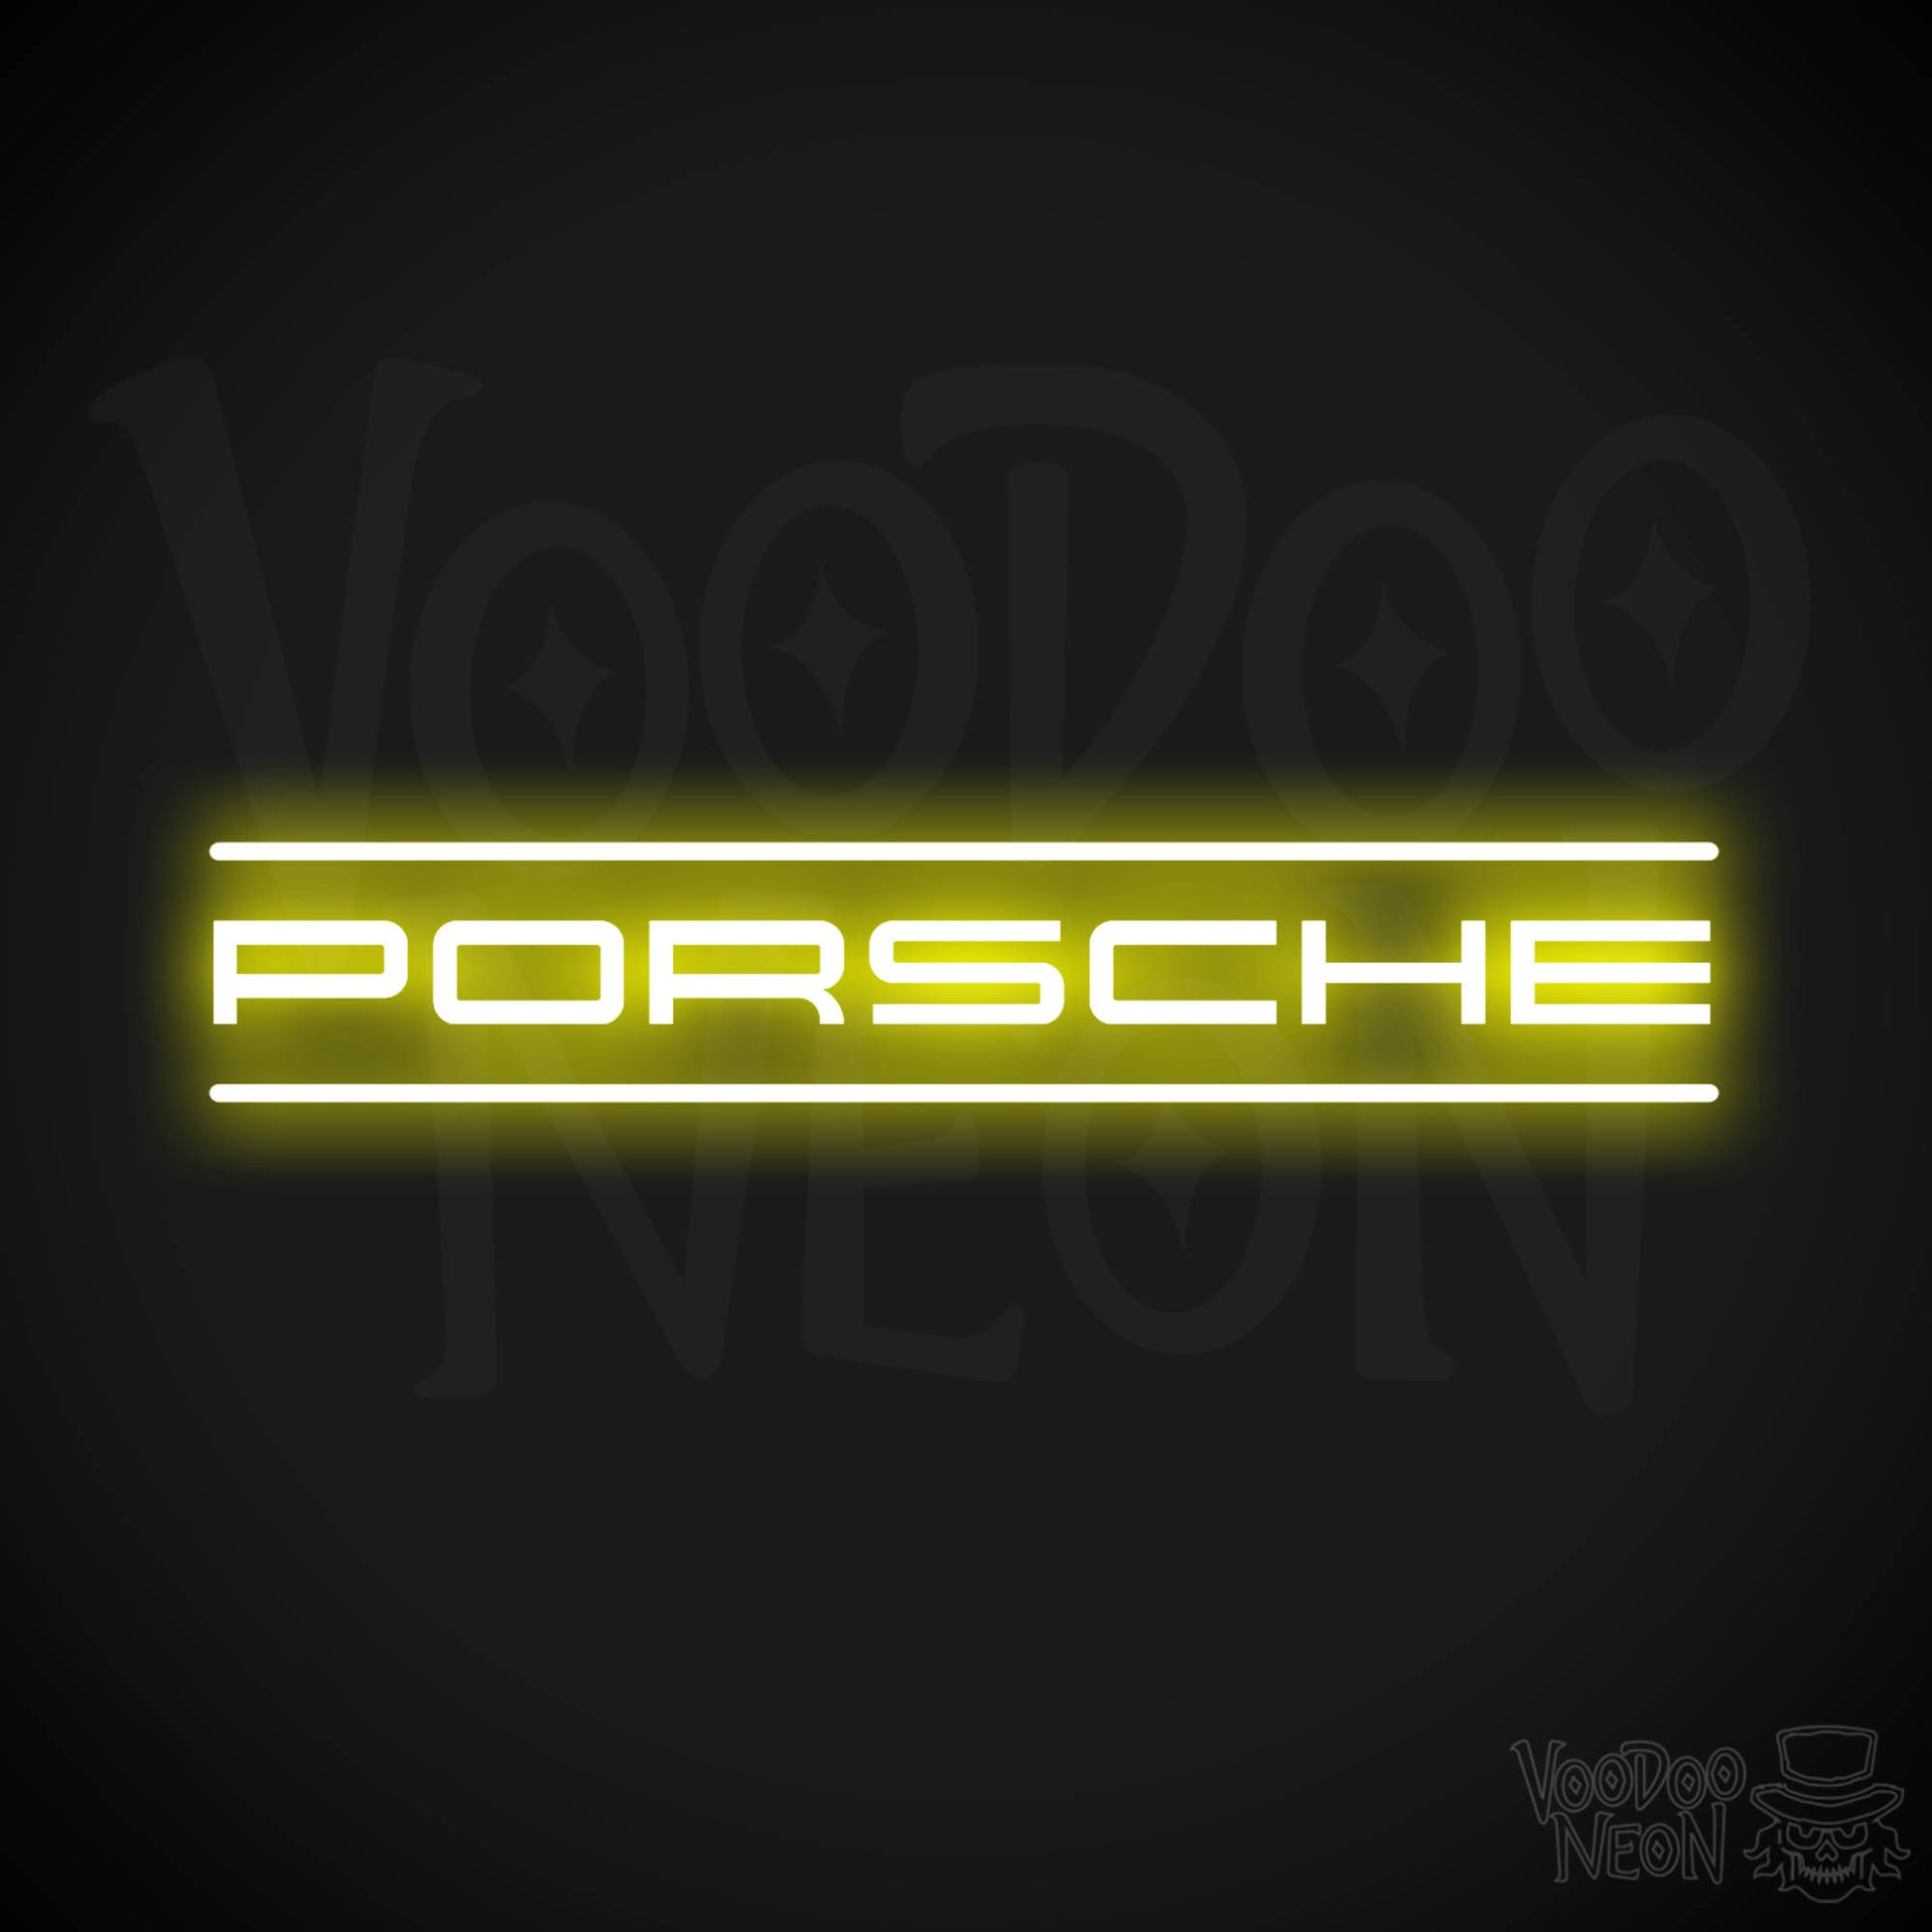 Porsche Neon Sign - Porsche Sign - Porsche Decor - Wall Art - Color Yellow